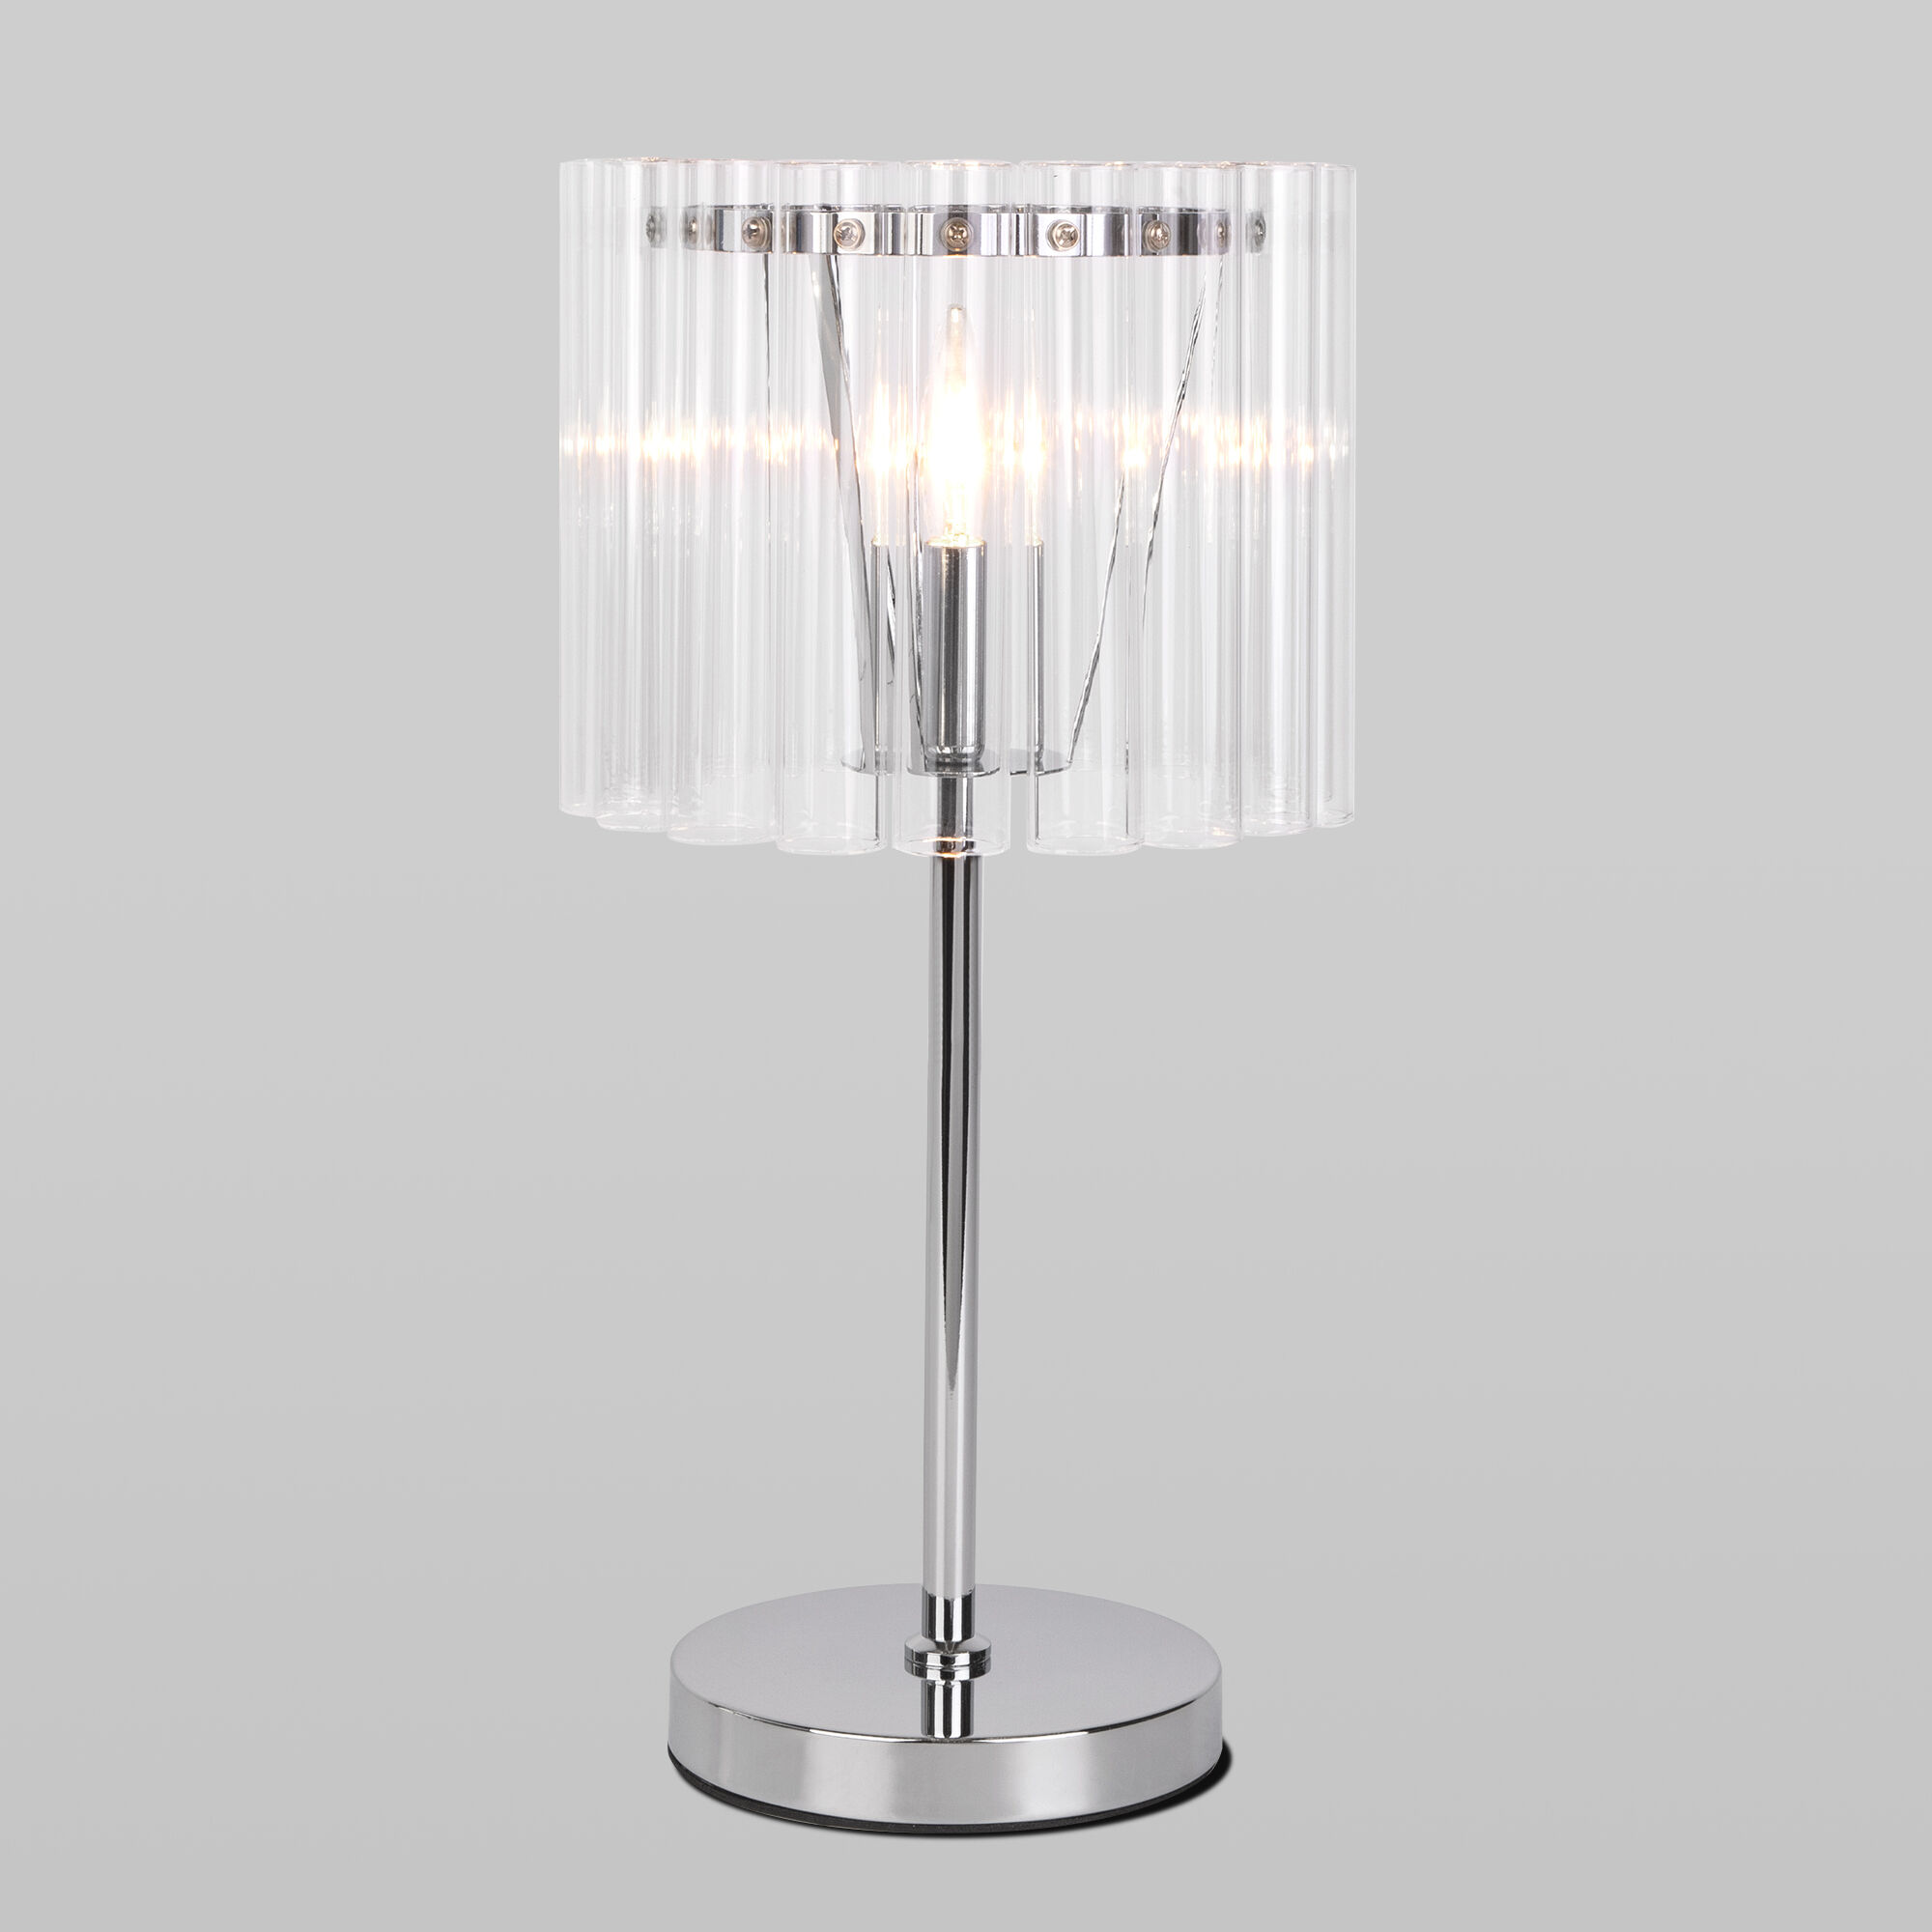 Настольный светильник со стеклянным плафоном Bogate's Flamel 01117/1 хром. Фото 1